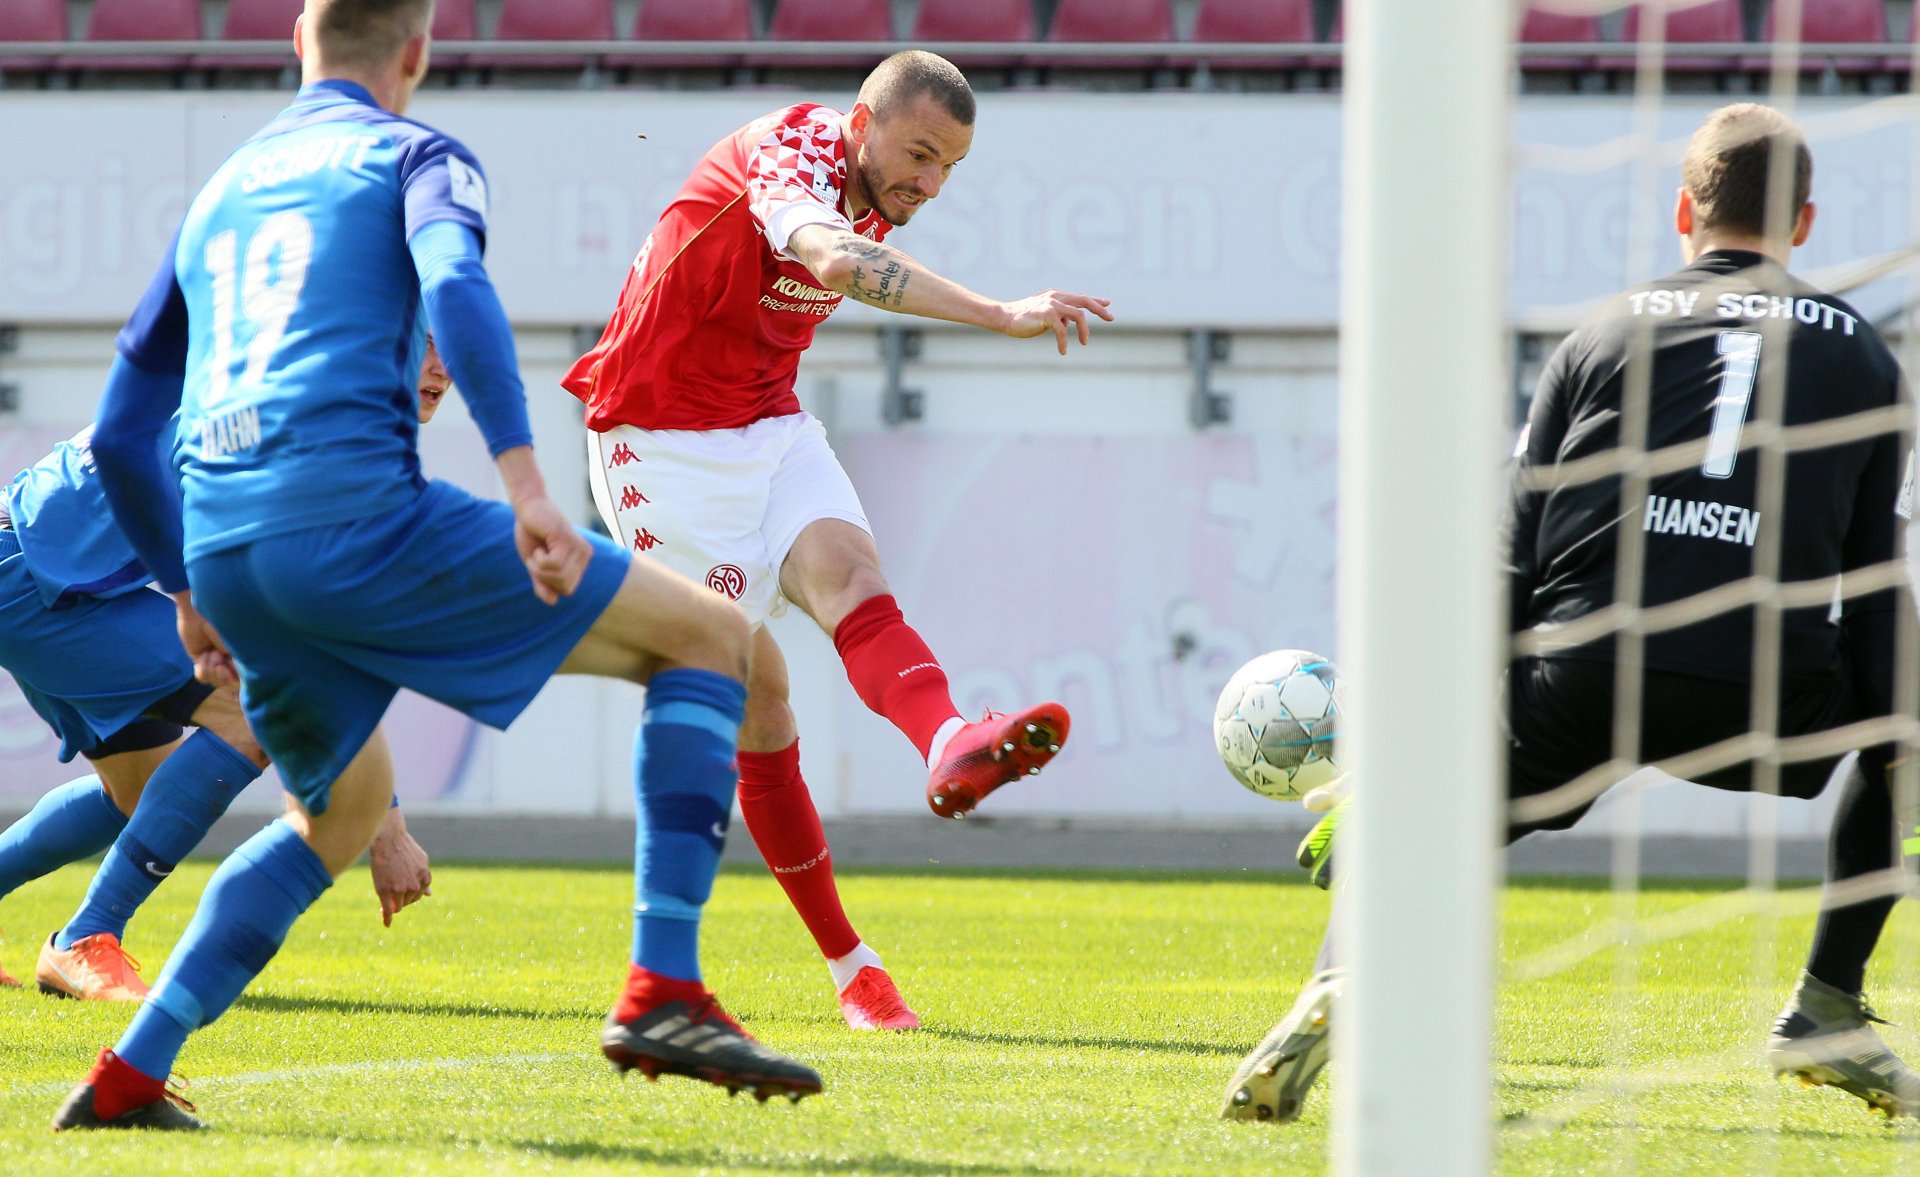 Simon Brandstetter erzielte den ersten Treffer im Derby zwischen der U23 des FSV Mainz 05 und dem TSV Schott. Nach Zuspiel von Oliver Wähling steuerte der Goalgetter von links aufs Gästetor zu, wurde nur halbherzig attackiert und schweißte den Ball hoch in die lange Ecke.